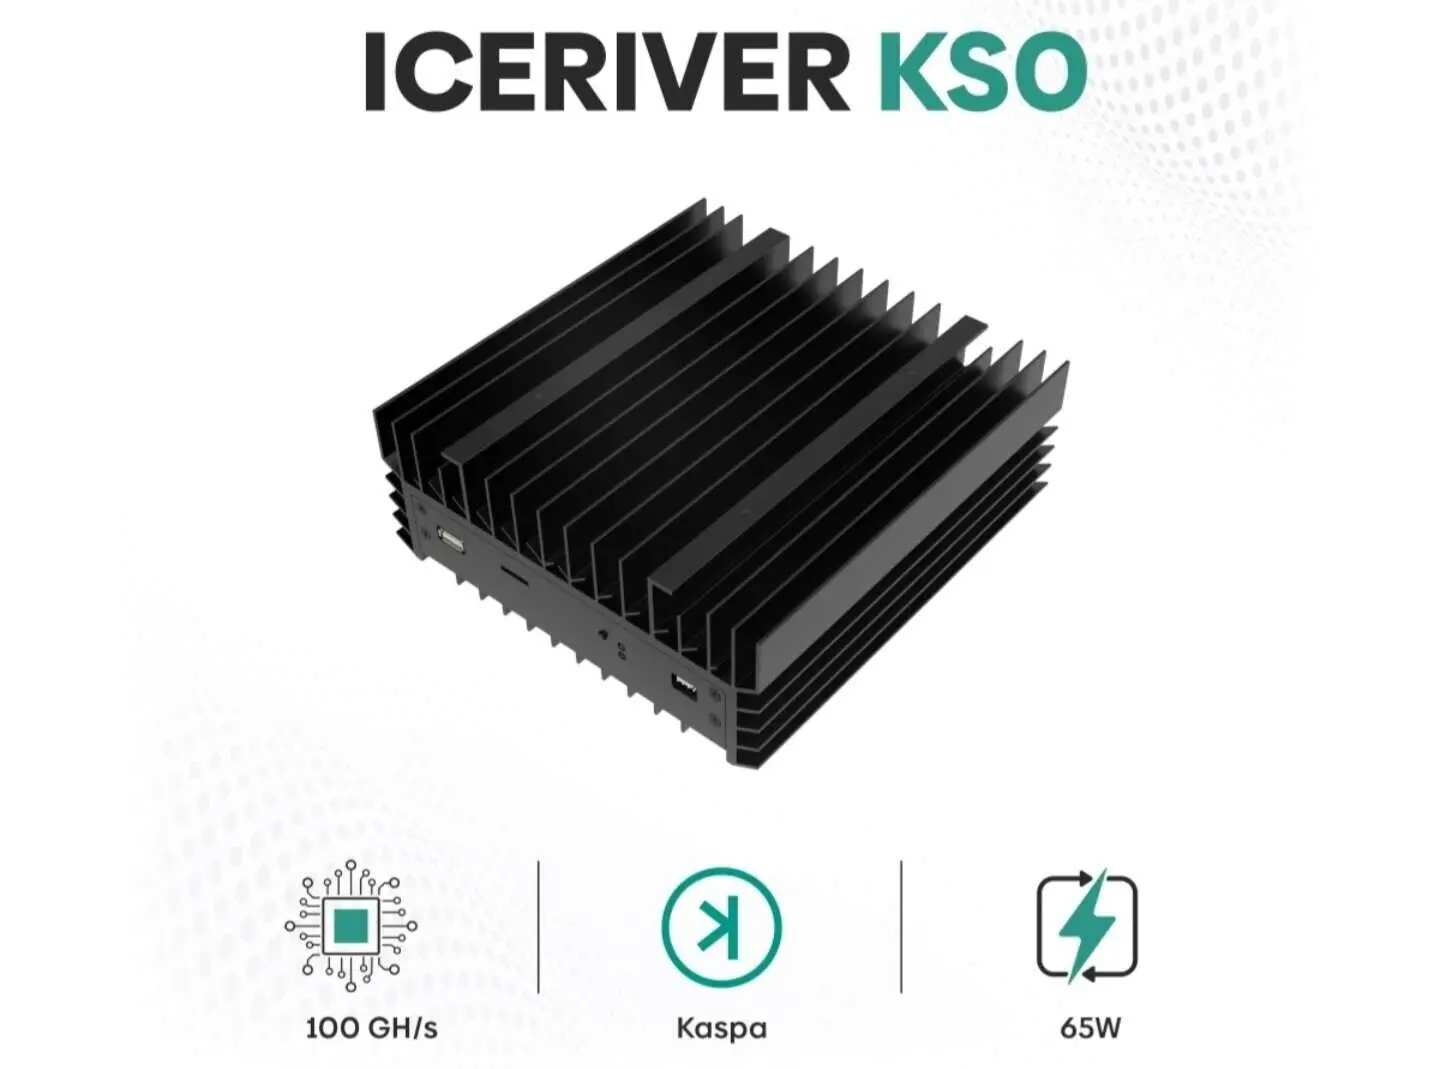 3080 ватт. Iceriver kas ks0 Pro 200 GH/S. Iceriver ks0 Pro 200gh/s 100 Вт. Iceriver KSO Pro. Купить iceriver kas ks0 Pro.